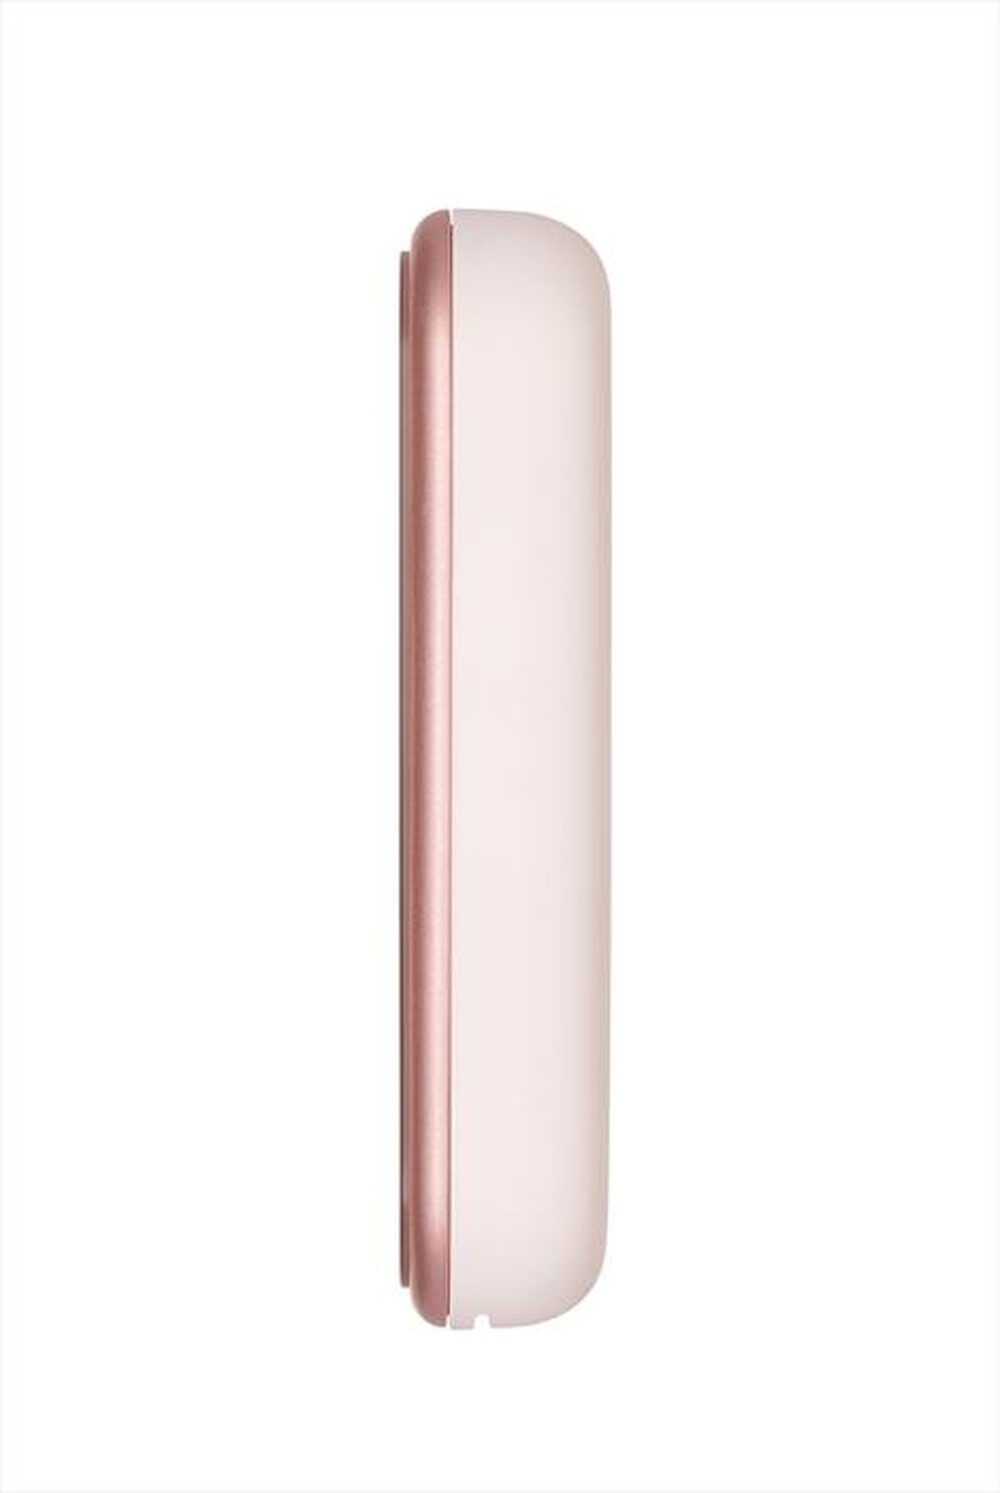 "CANON - Stampante fotografica ricaricabile ZOEMINI 2-Rose Gold & White"